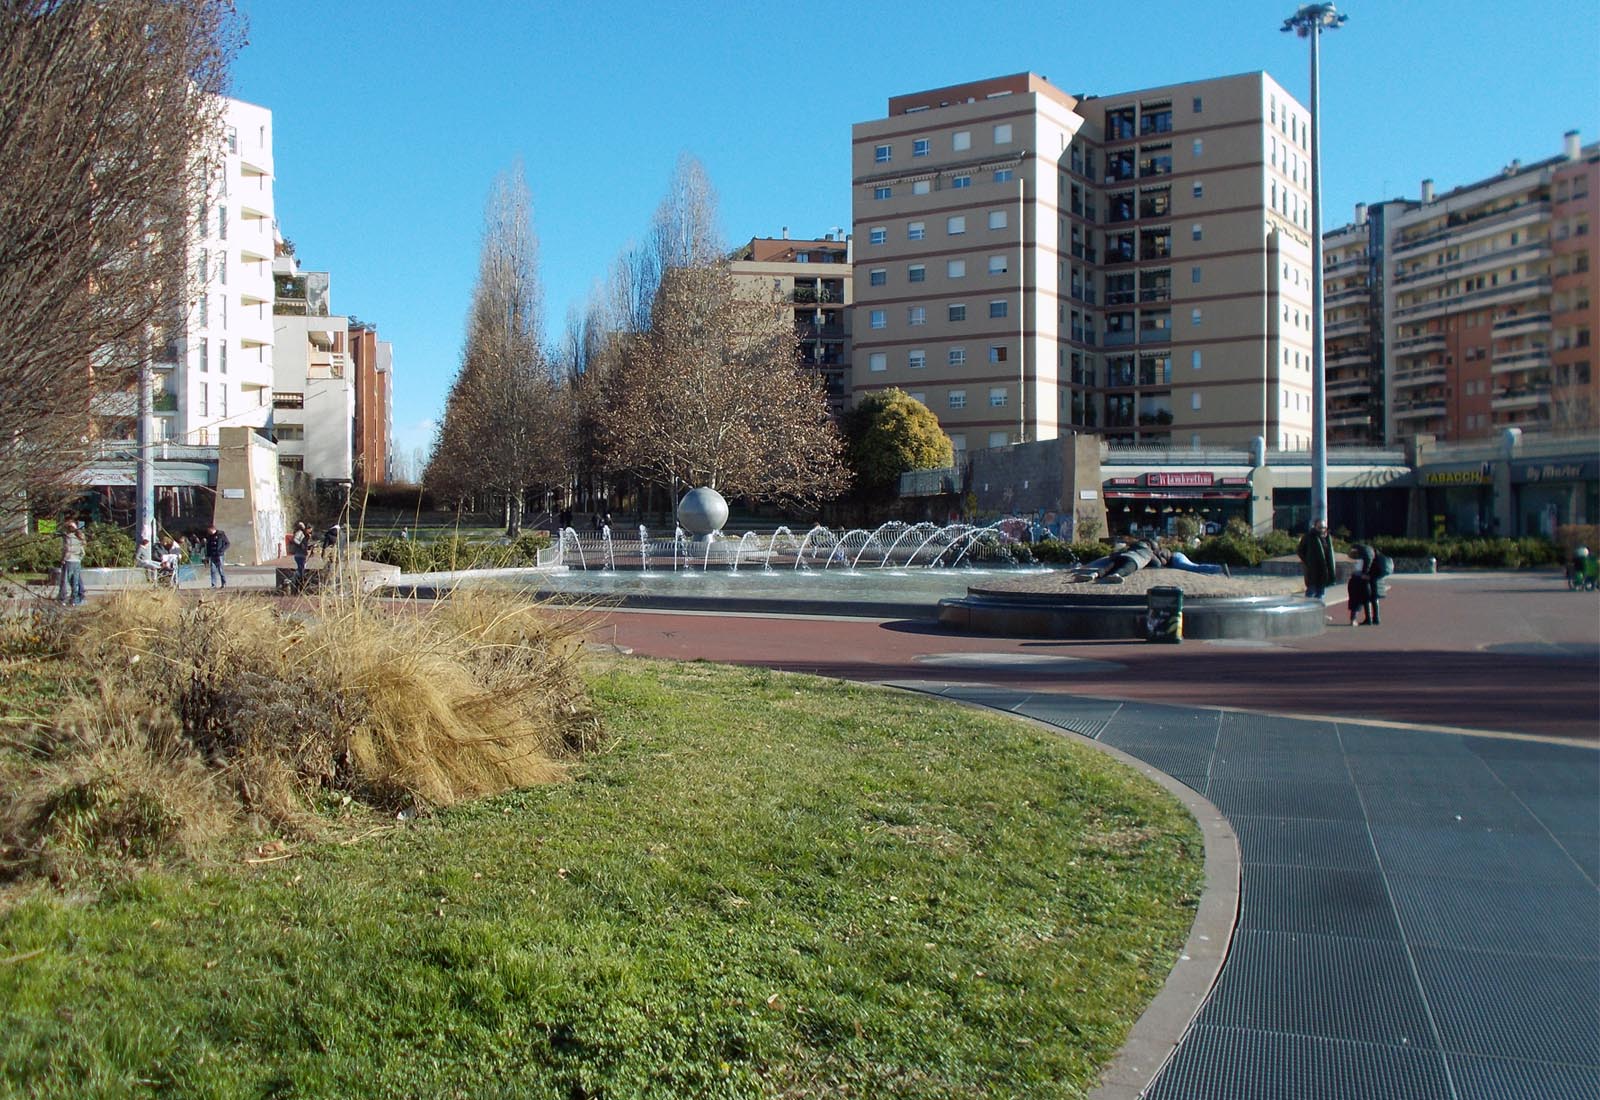 Autorimessa piazza VVF - La piazza con fontana